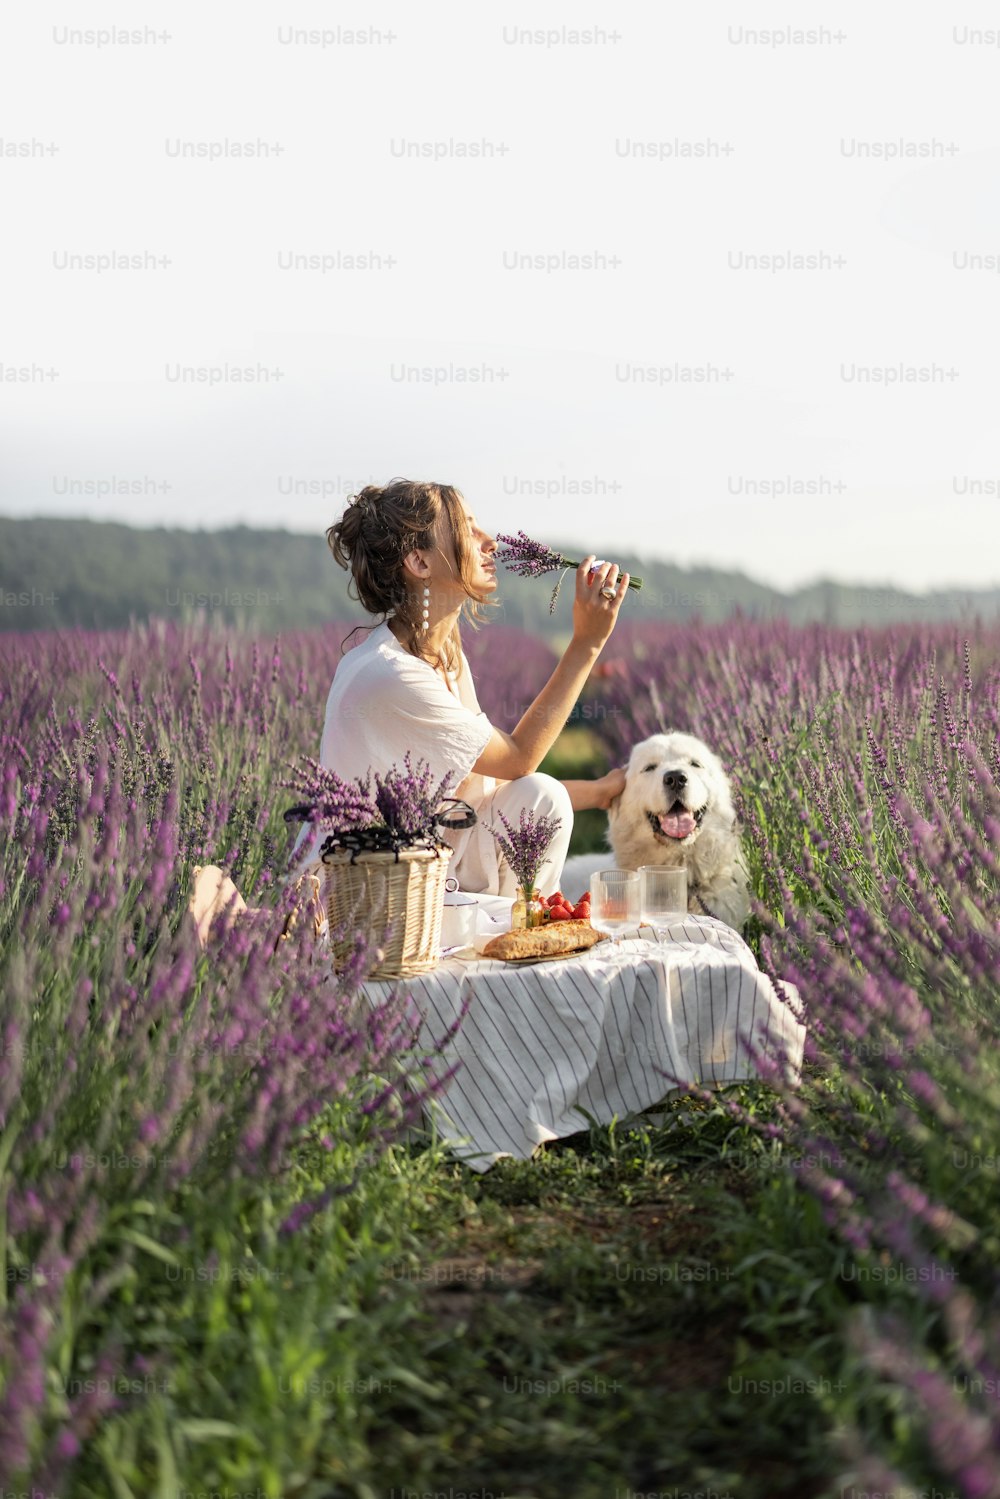 Mulher nova que desfruta de piquenique com cão no campo de lavanda com buquê de flores violetas. Conceito de natureza bonita e calma